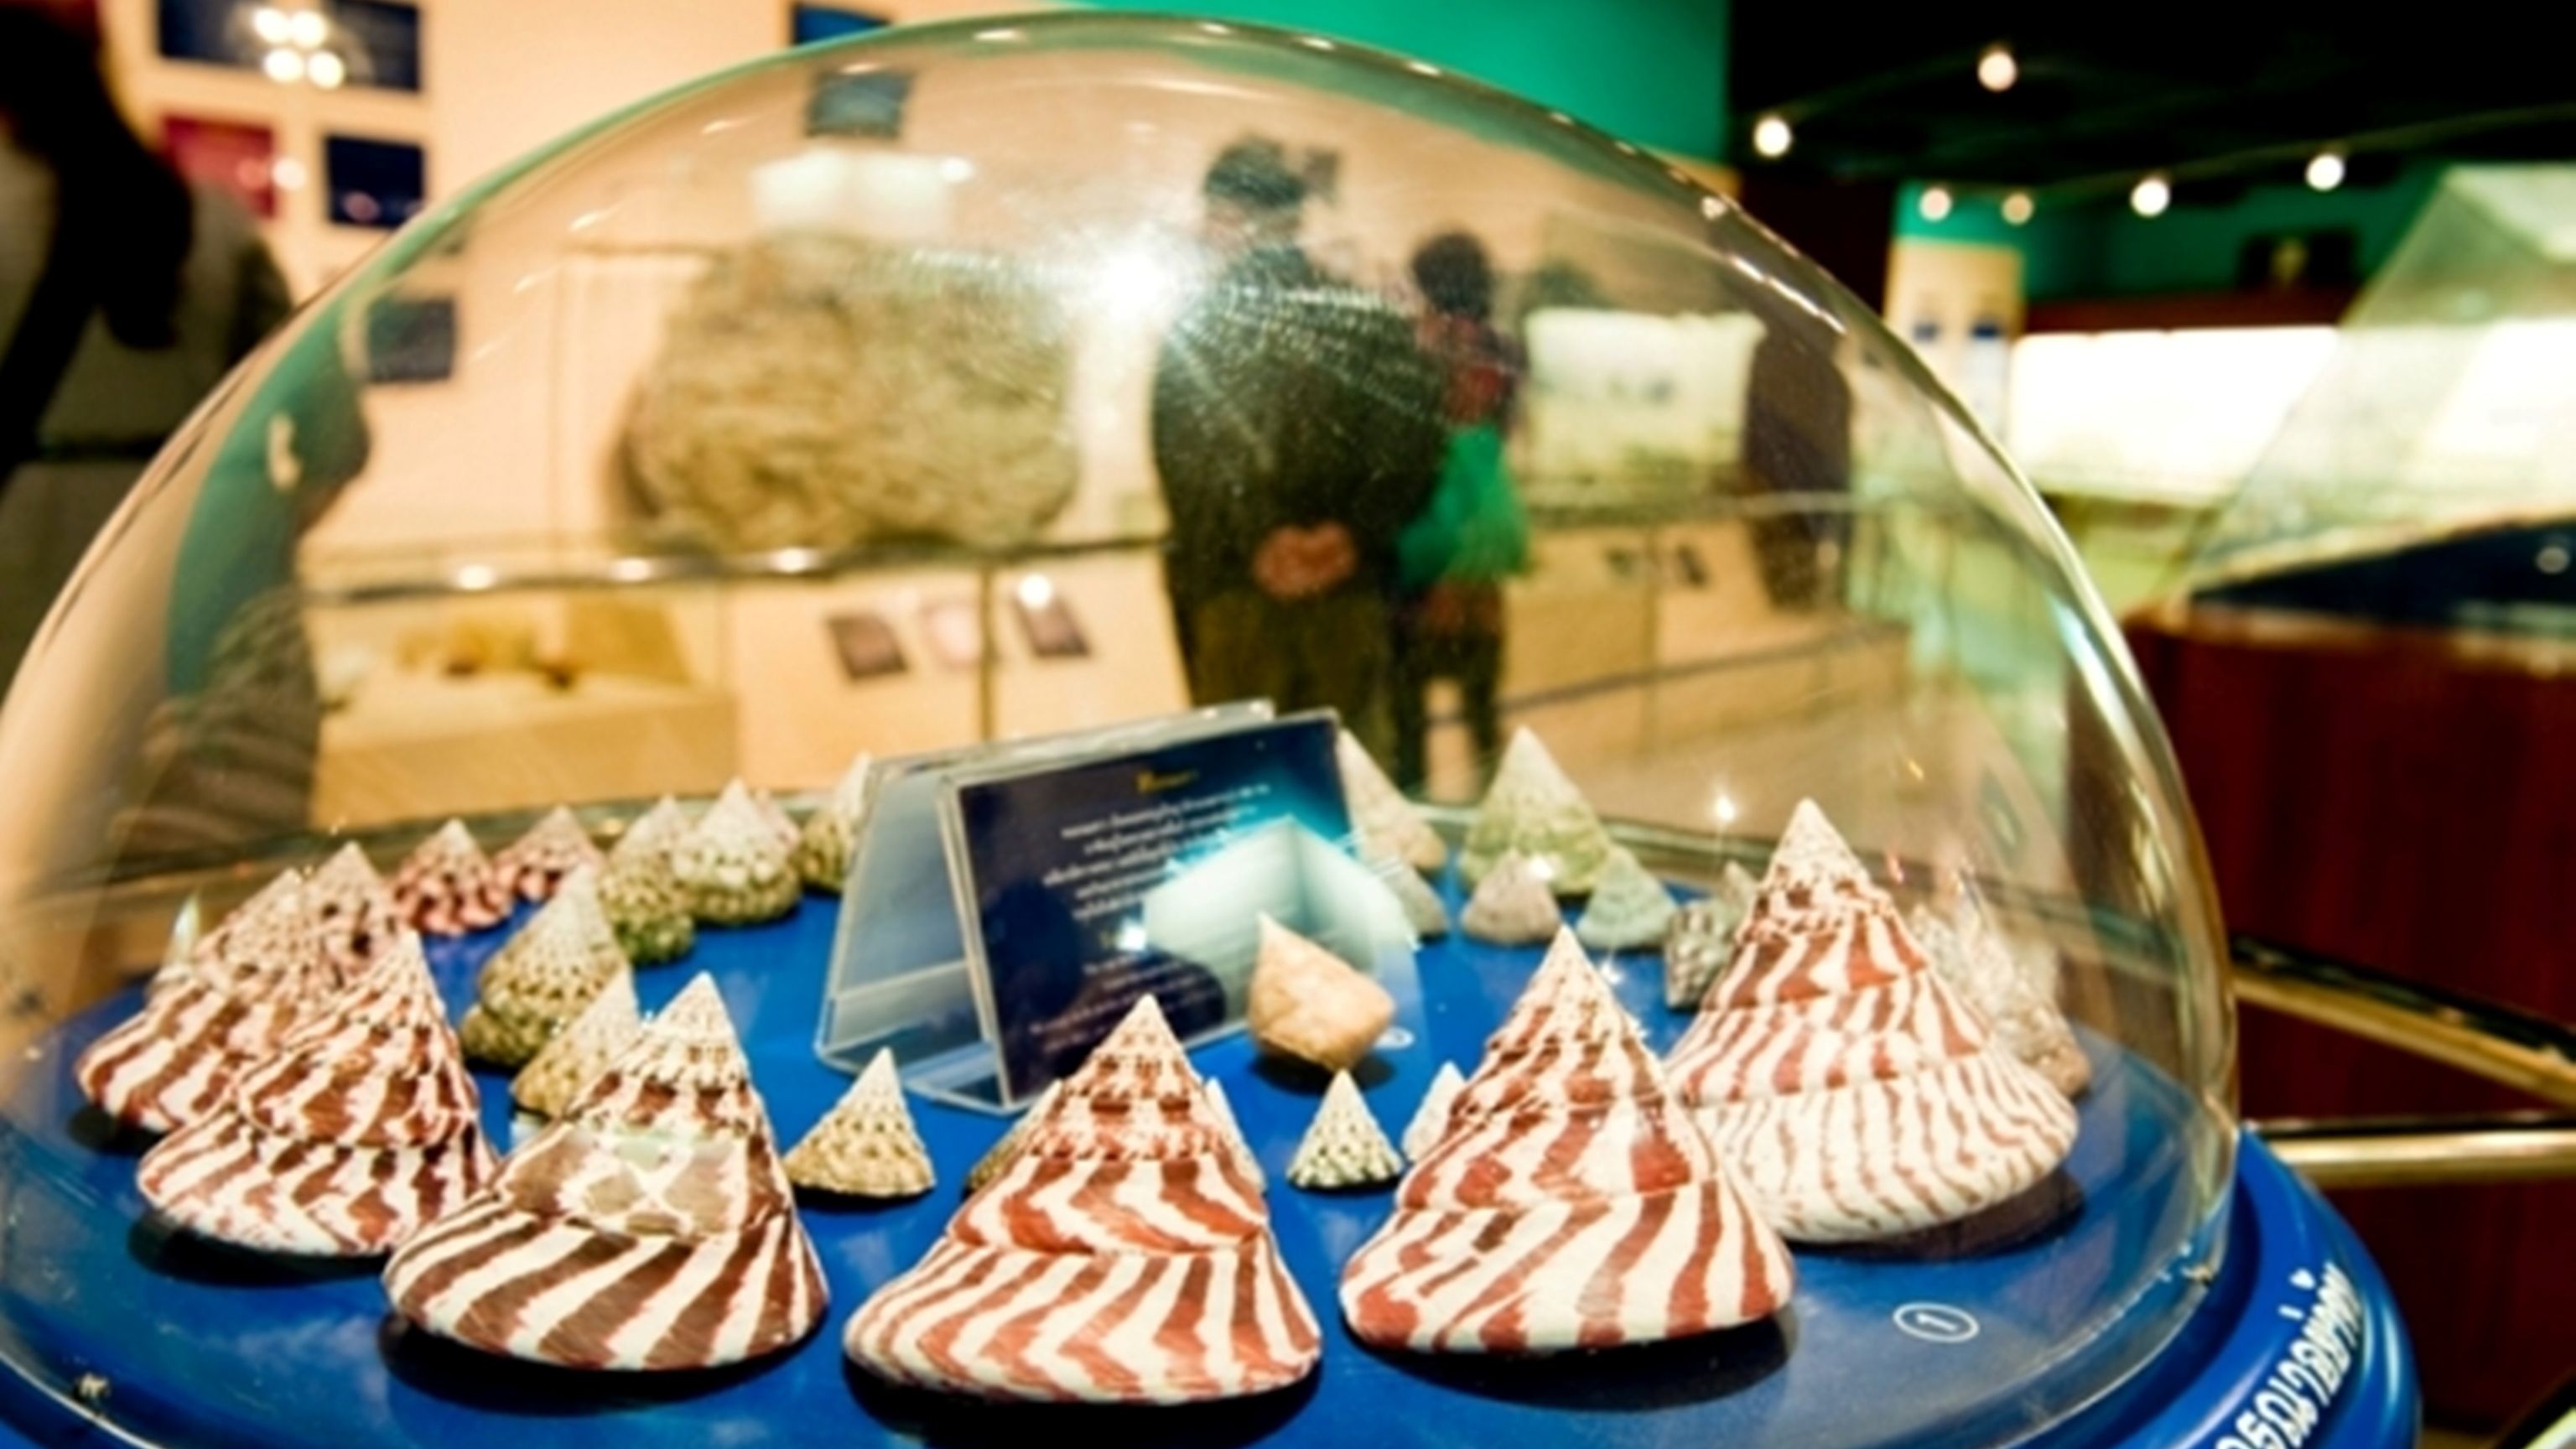 phuket-seashell-museum.jpg